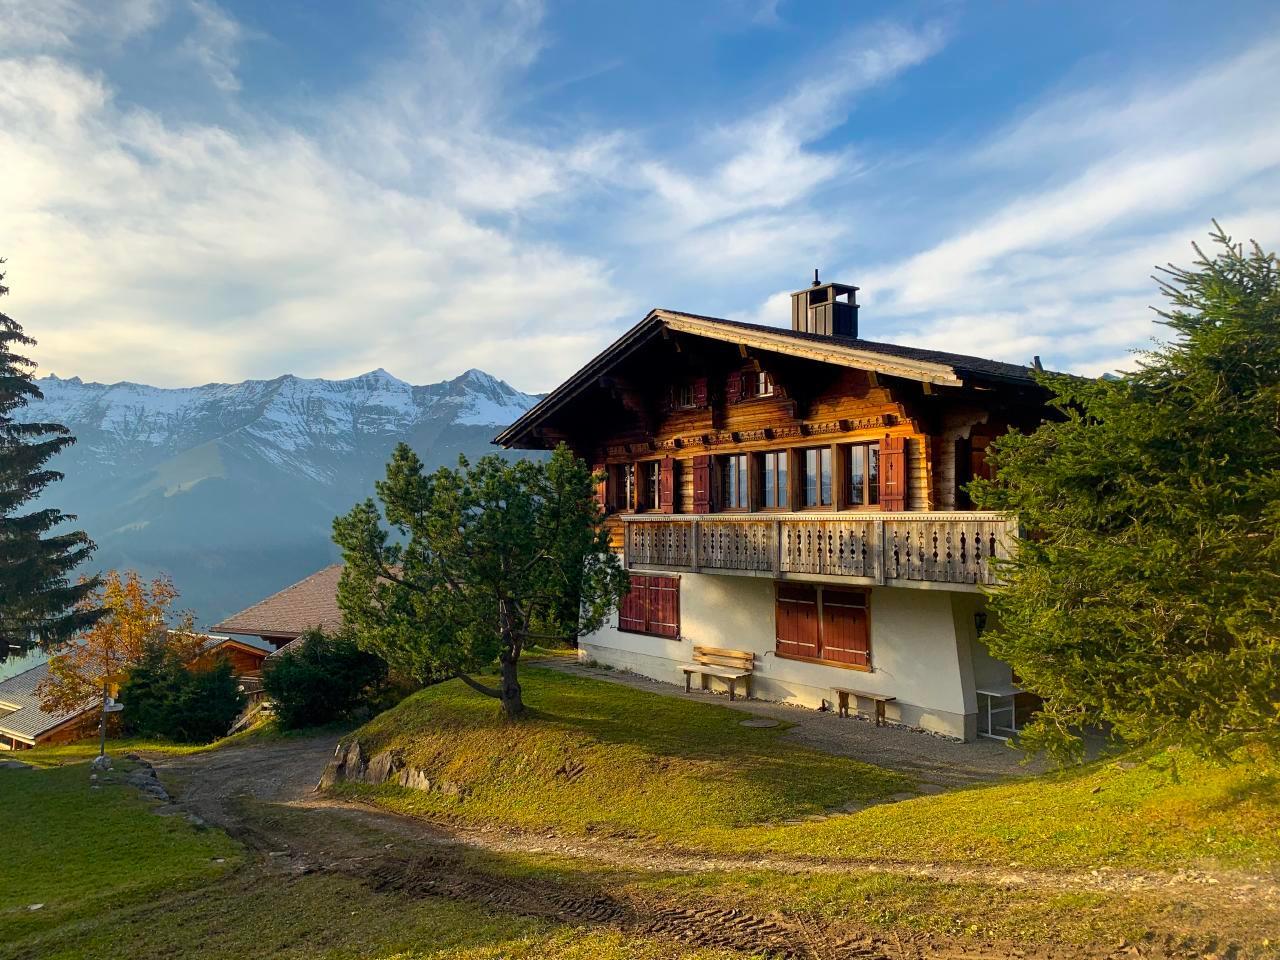 Chalet Bärgblüemli Ferienhaus in der Schweiz